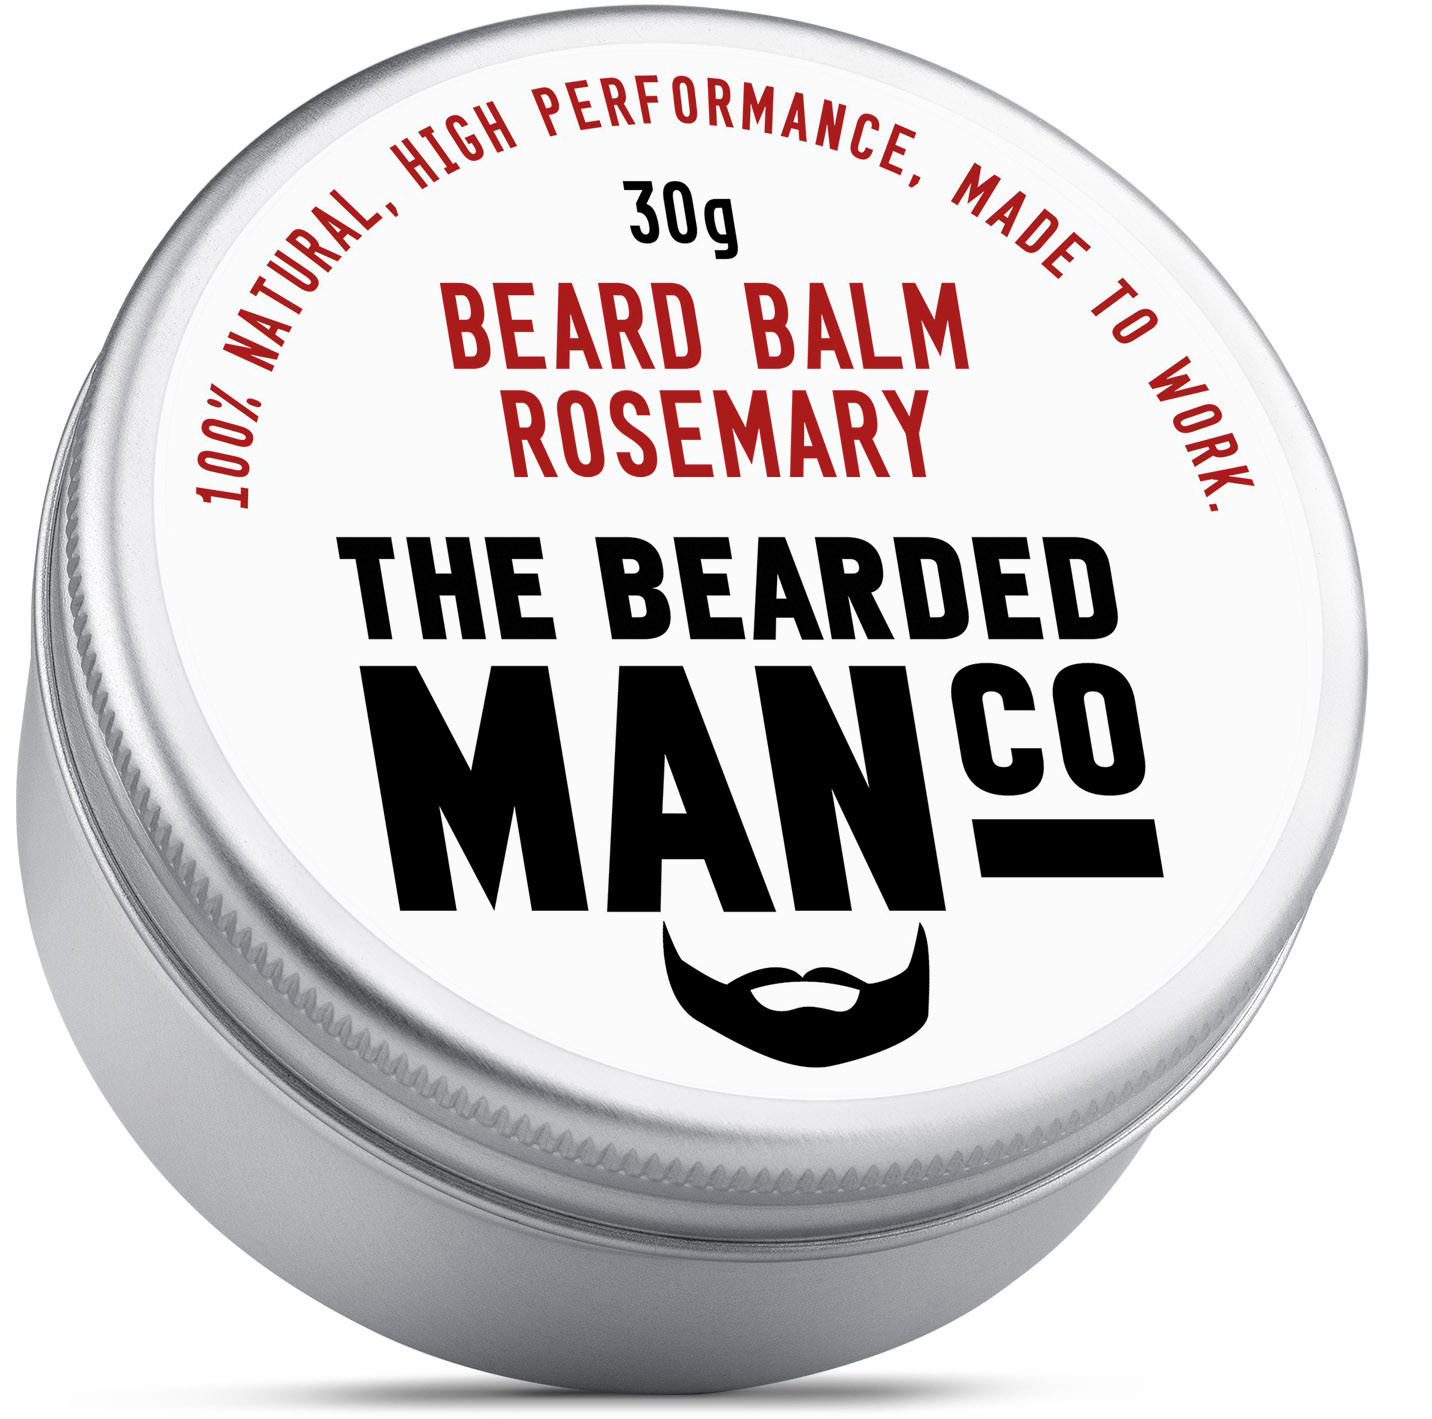 The Bearded Man Balm Rosemary